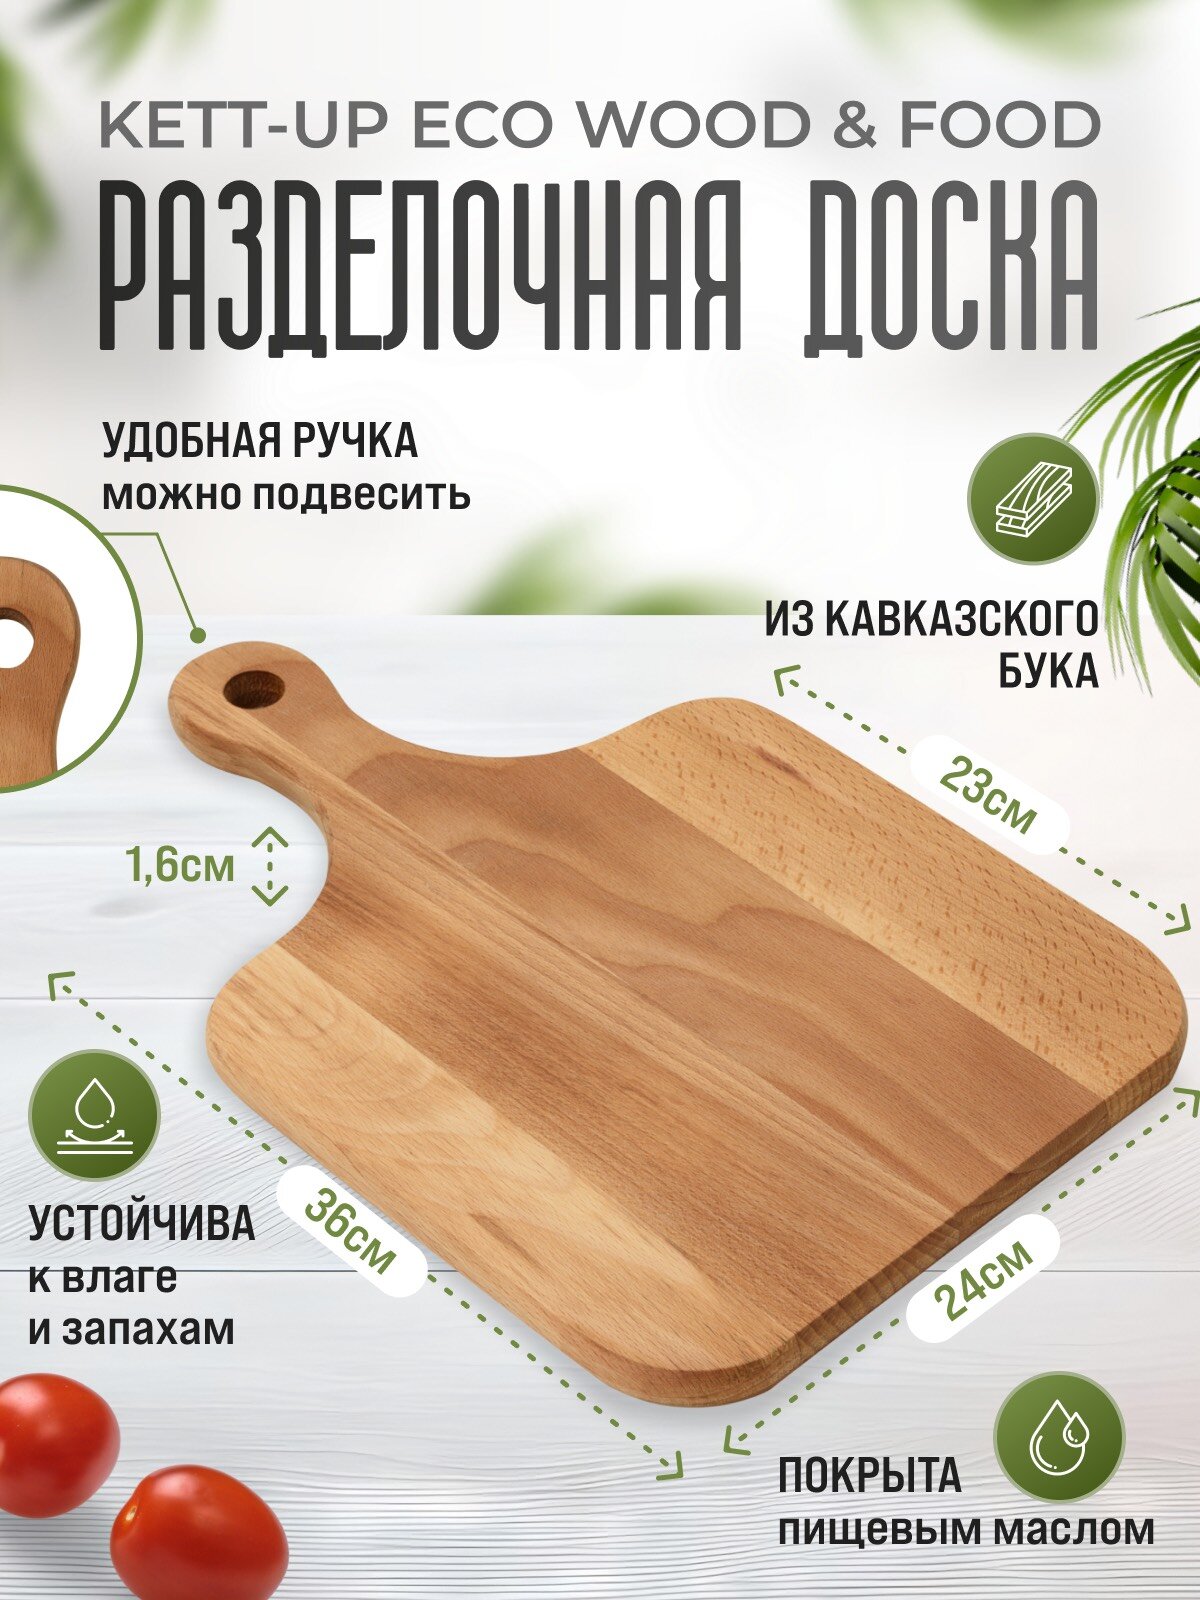 Разделочная доска KETT-UP ECO WOOD & FOOD 24*35см классическая деревянная